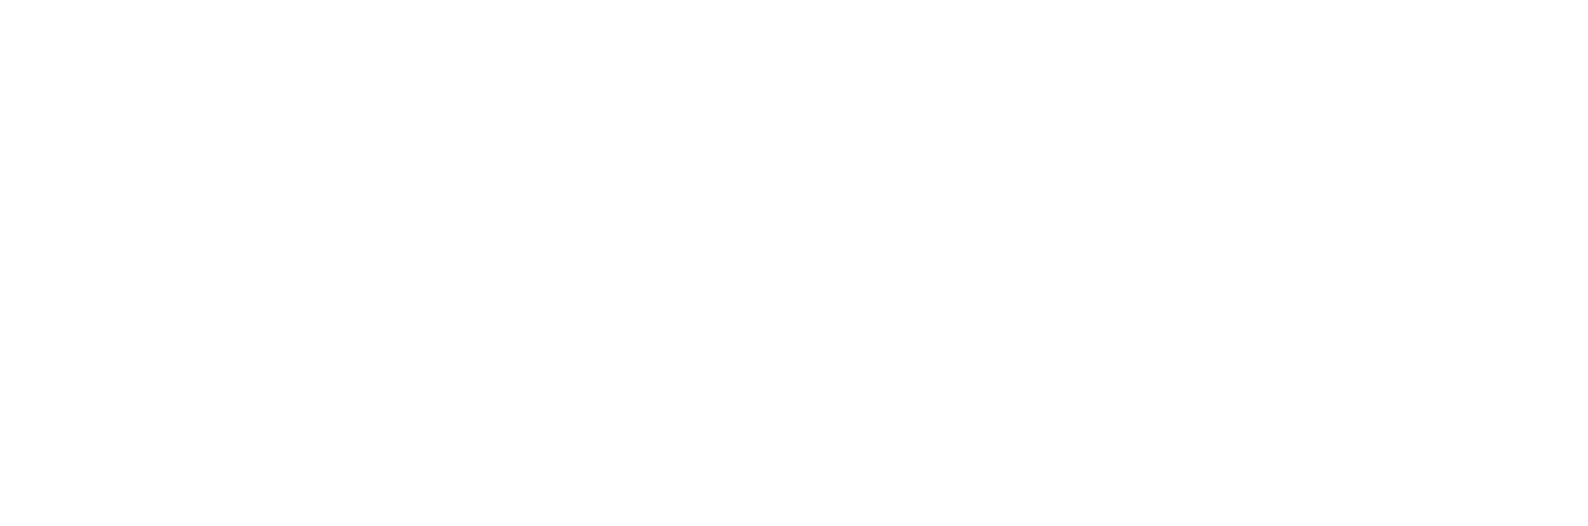 Skyworks Solutions
 logo large for dark backgrounds (transparent PNG)